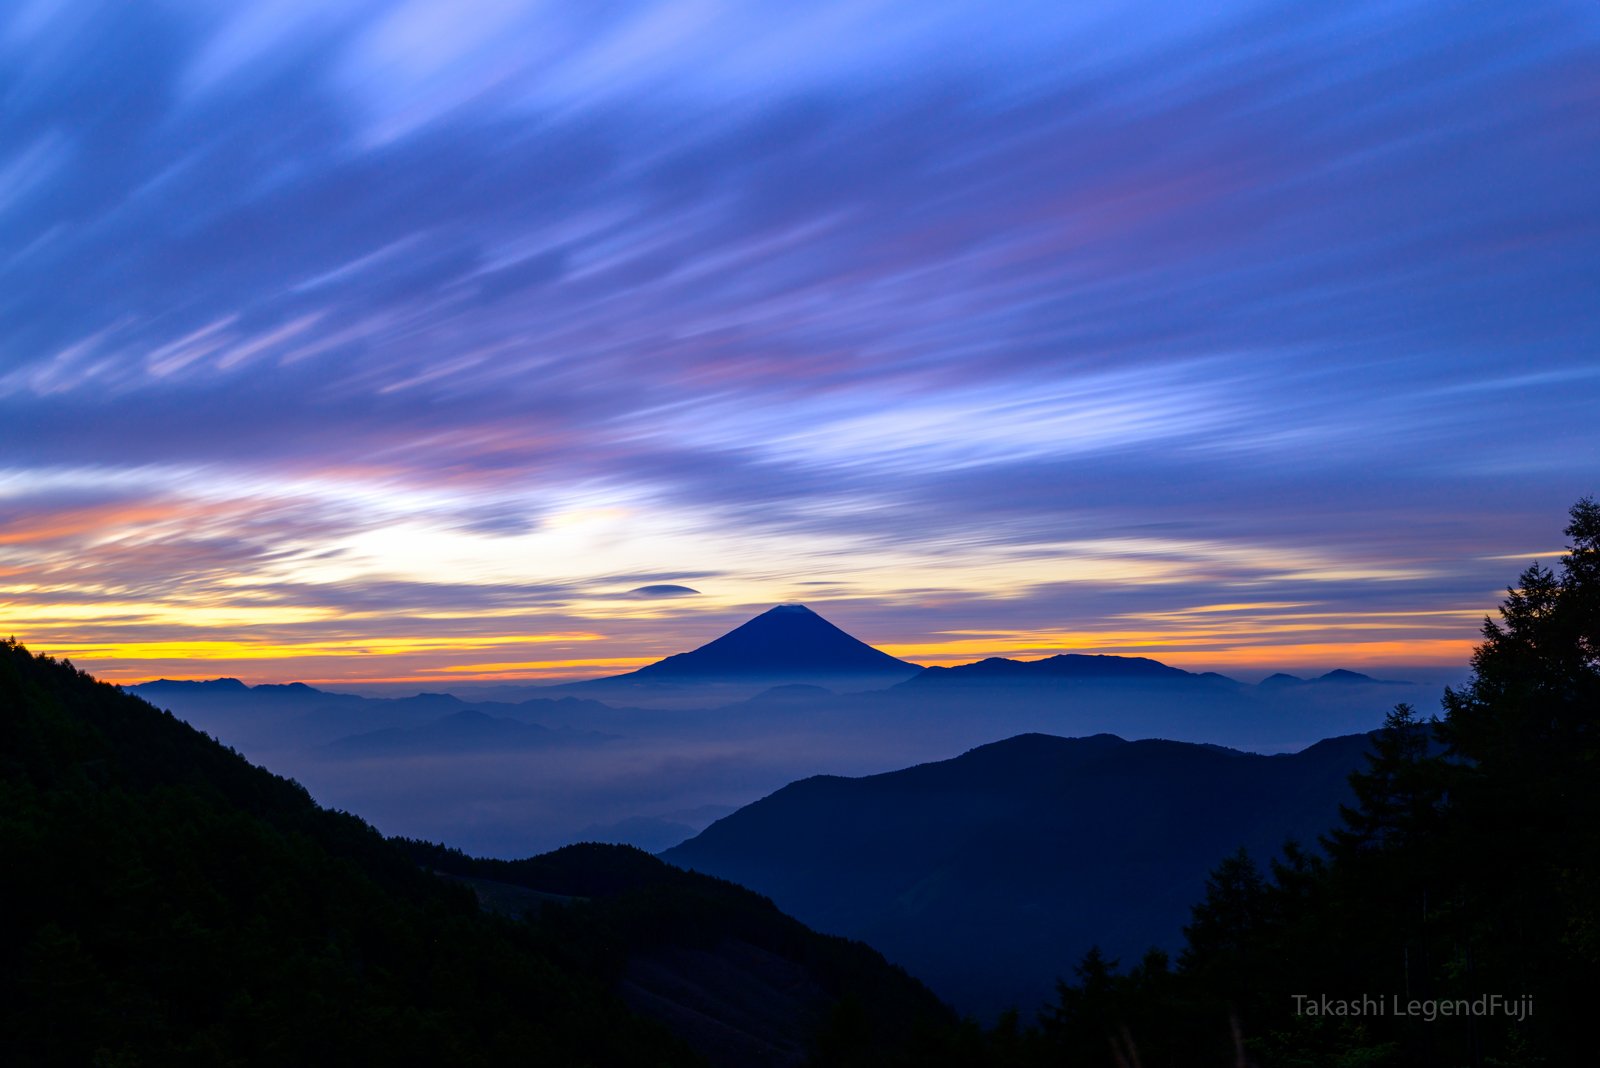 Fuji,mountain,Japan,red,blue,sky,cloud,morning glow,, Takashi